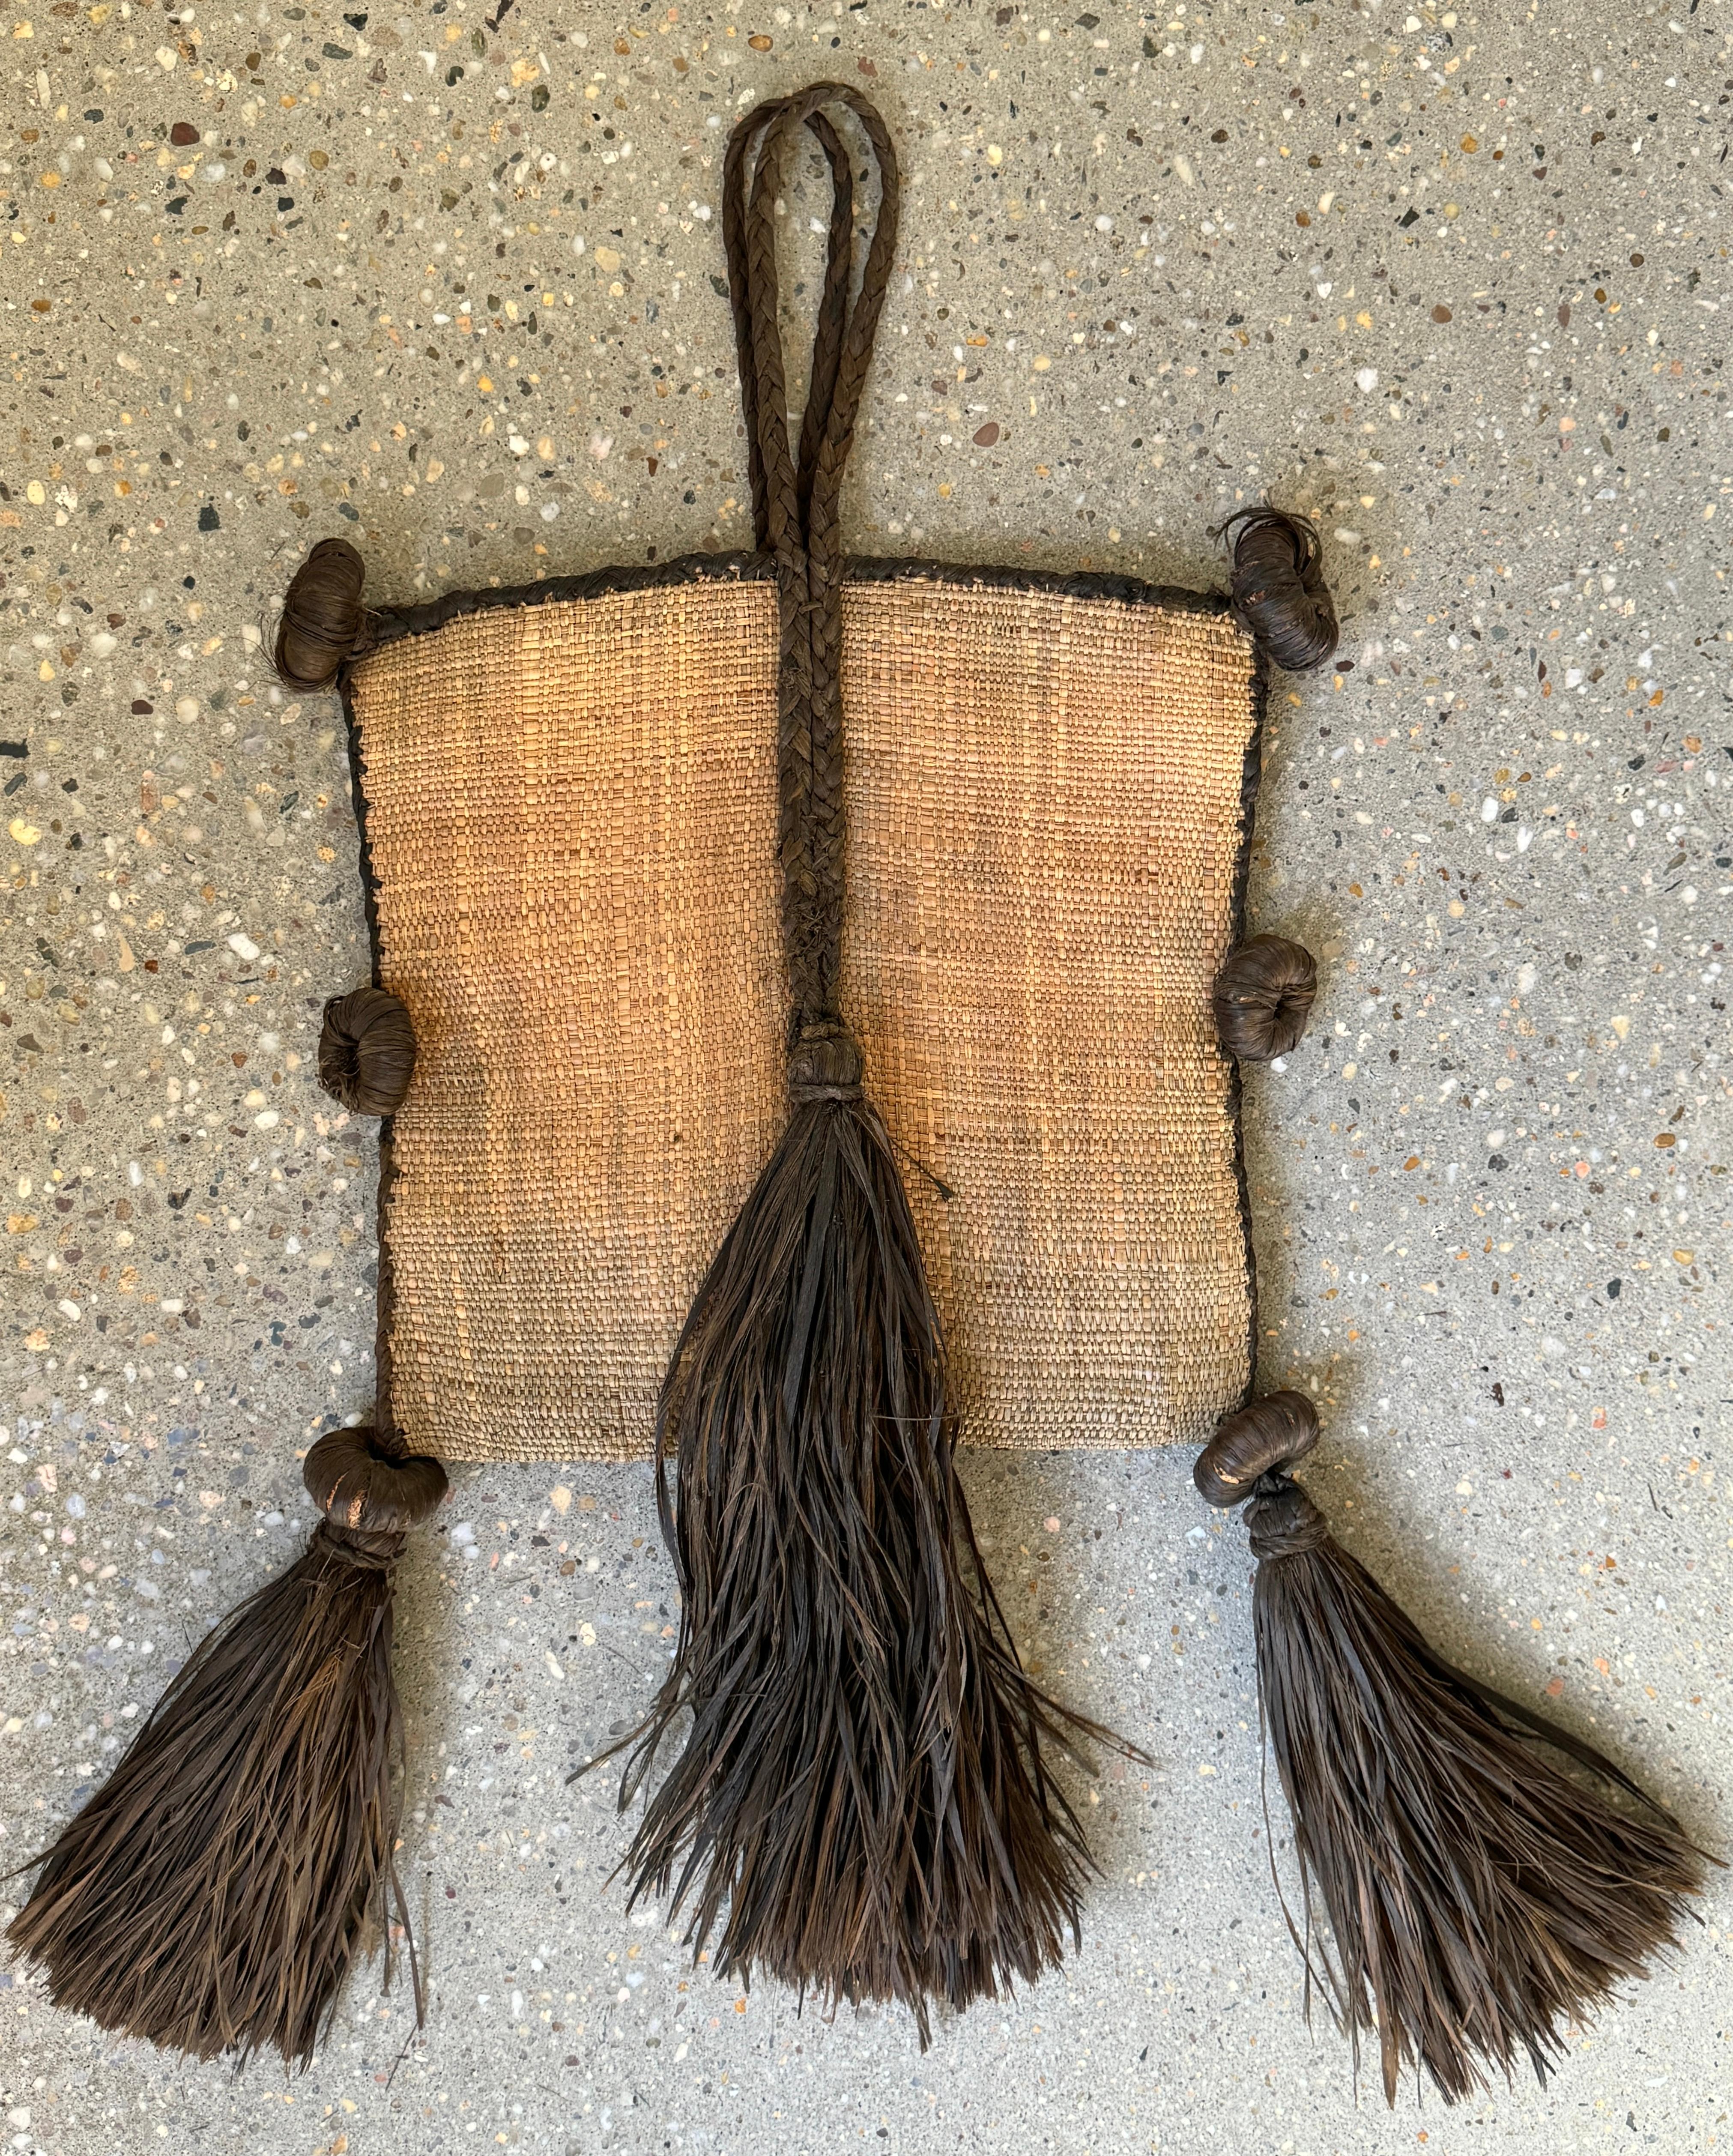 Schamanen-Leibsäcke aus dem frühen 20. Jahrhundert waren heilige und bedeutende Artefakte, die bei bestimmten kulturellen Praktiken und Ritualen verschiedener indigener Gemeinschaften und Schamanen in unterschiedlichen Teilen der Welt verwendet